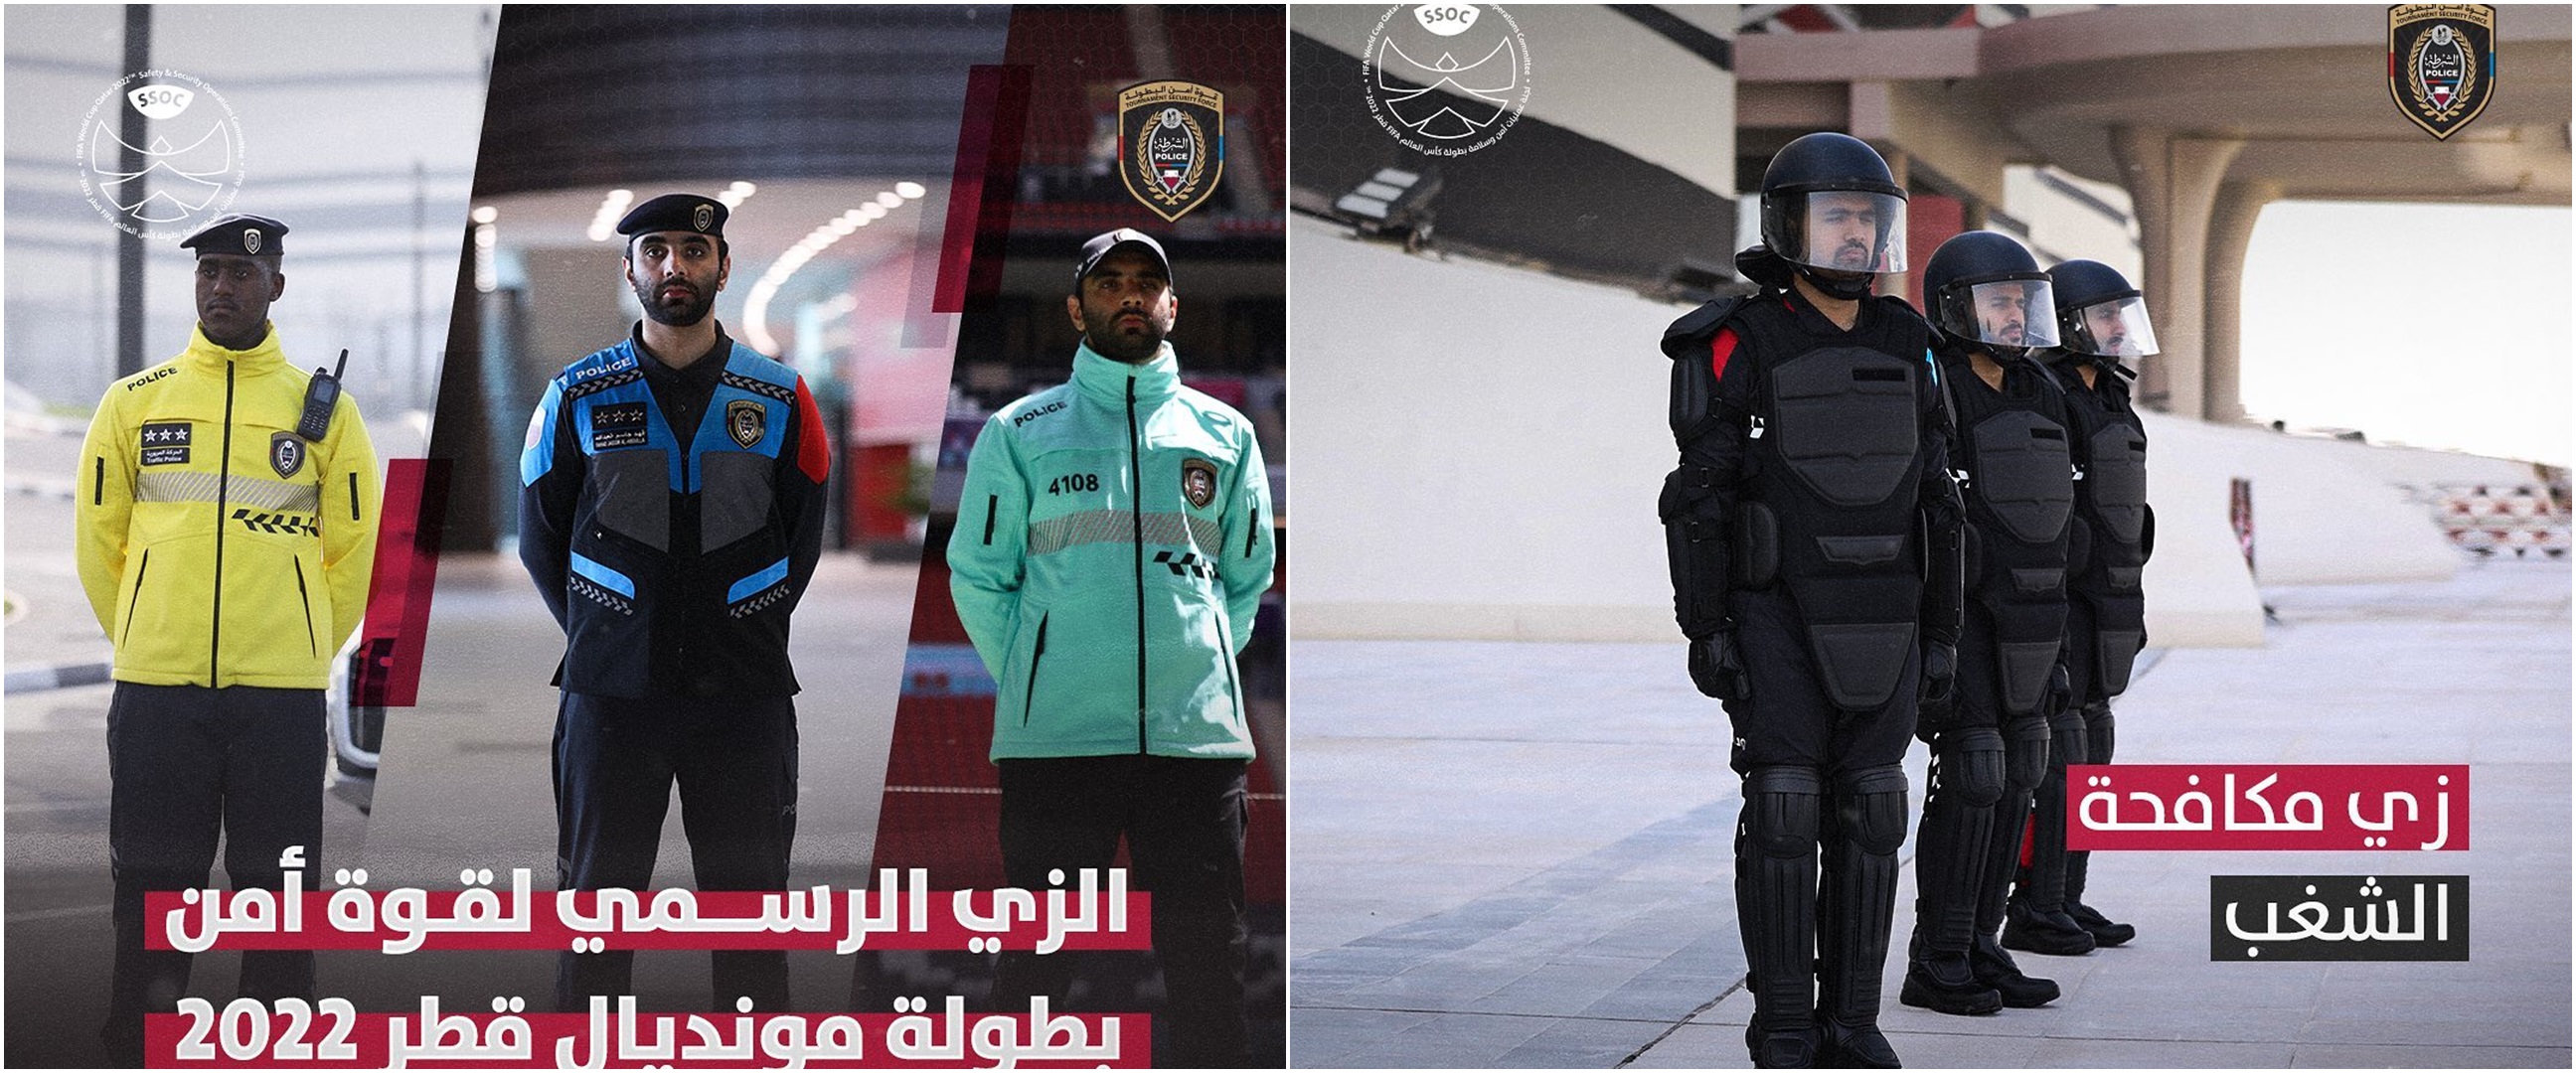 Qatar rilis seragam pasukan keamanan selama Piala Dunia 2022